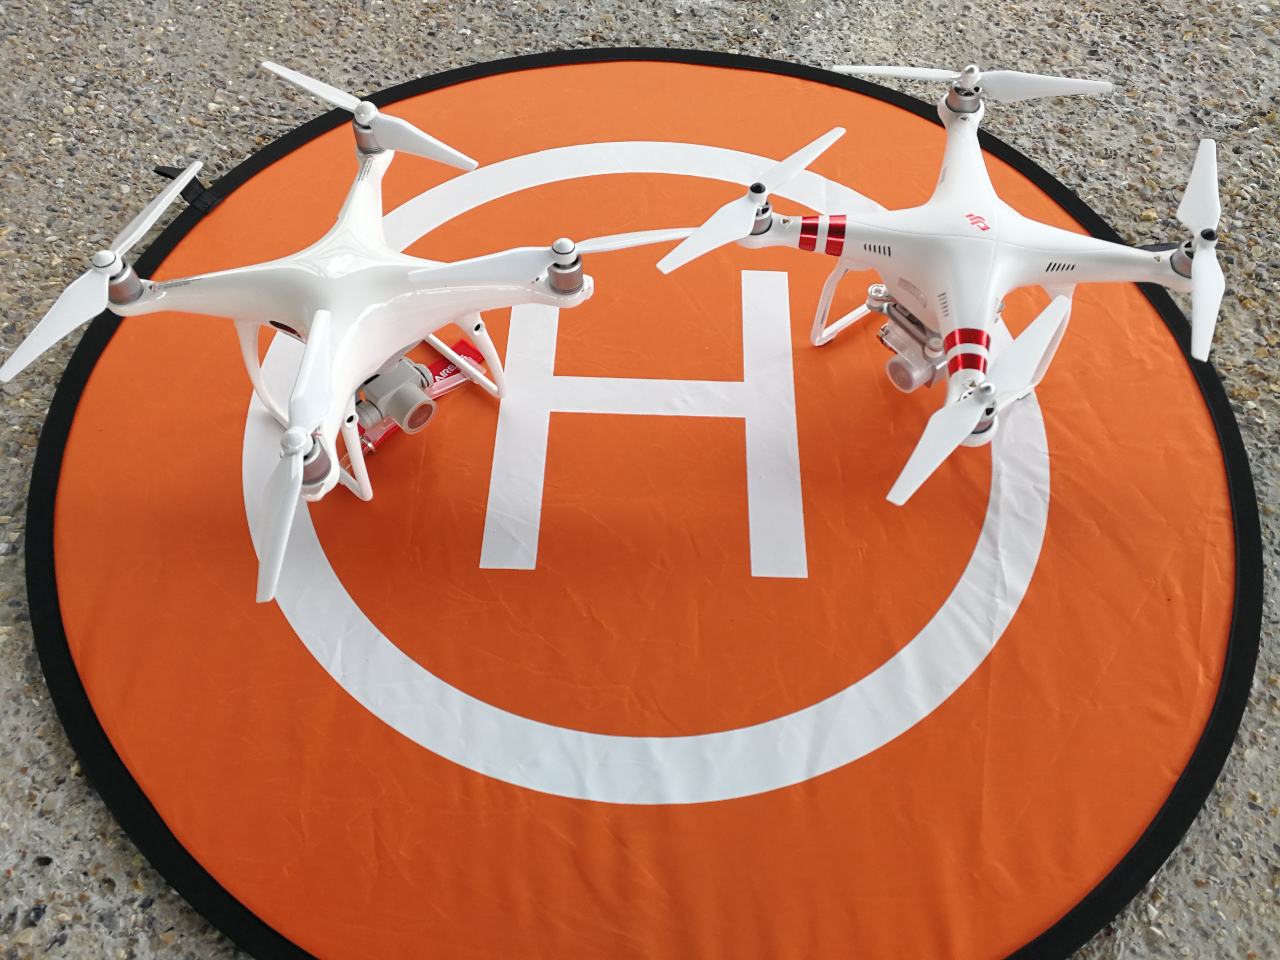 L'association met à disposition des sapeurs-pompiers des drones et des télépilotes.